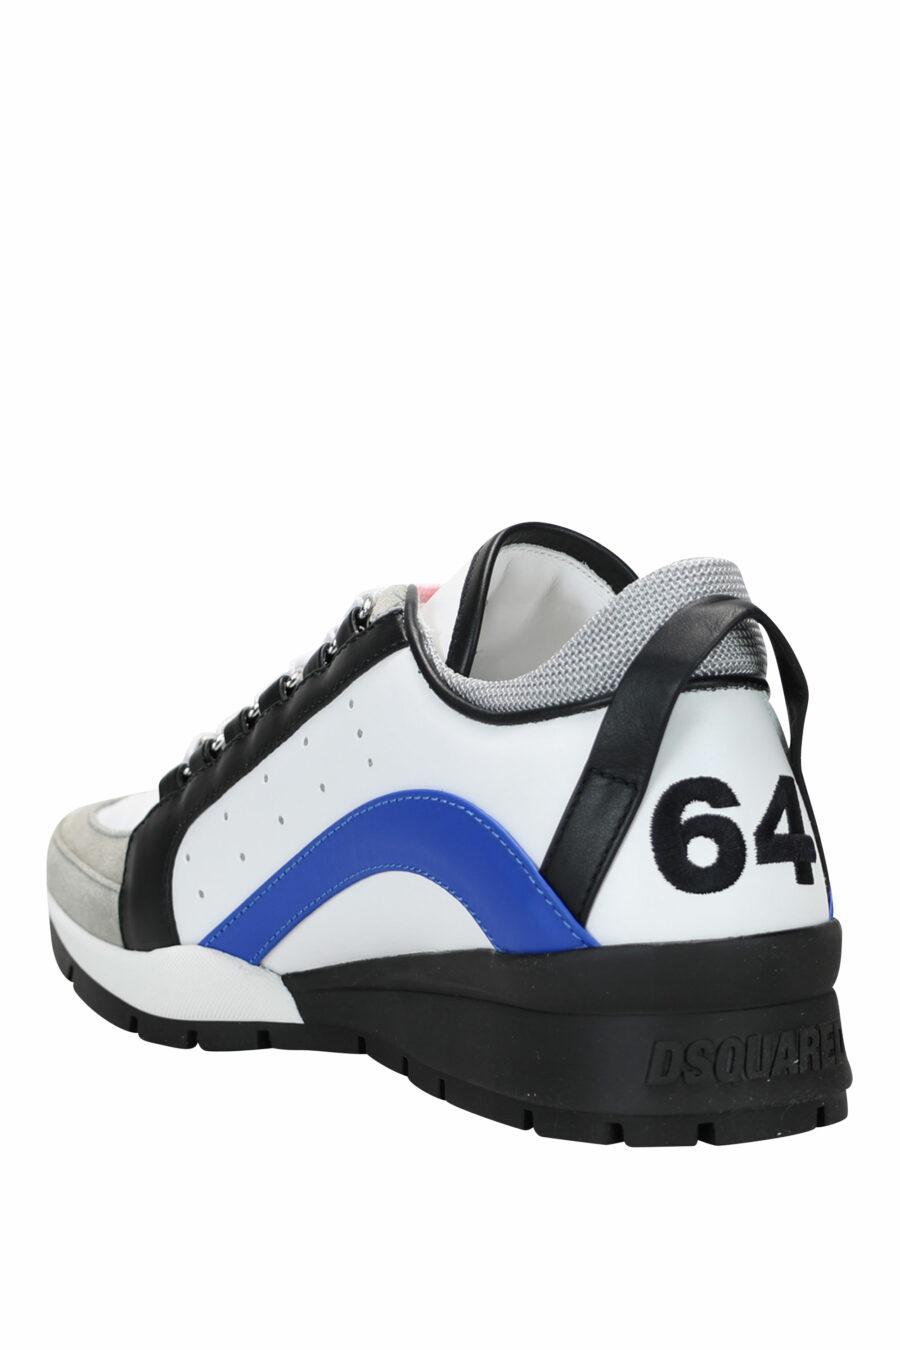 Zapatillas blancas con negro y azul y minilogo - 8055777243701 3